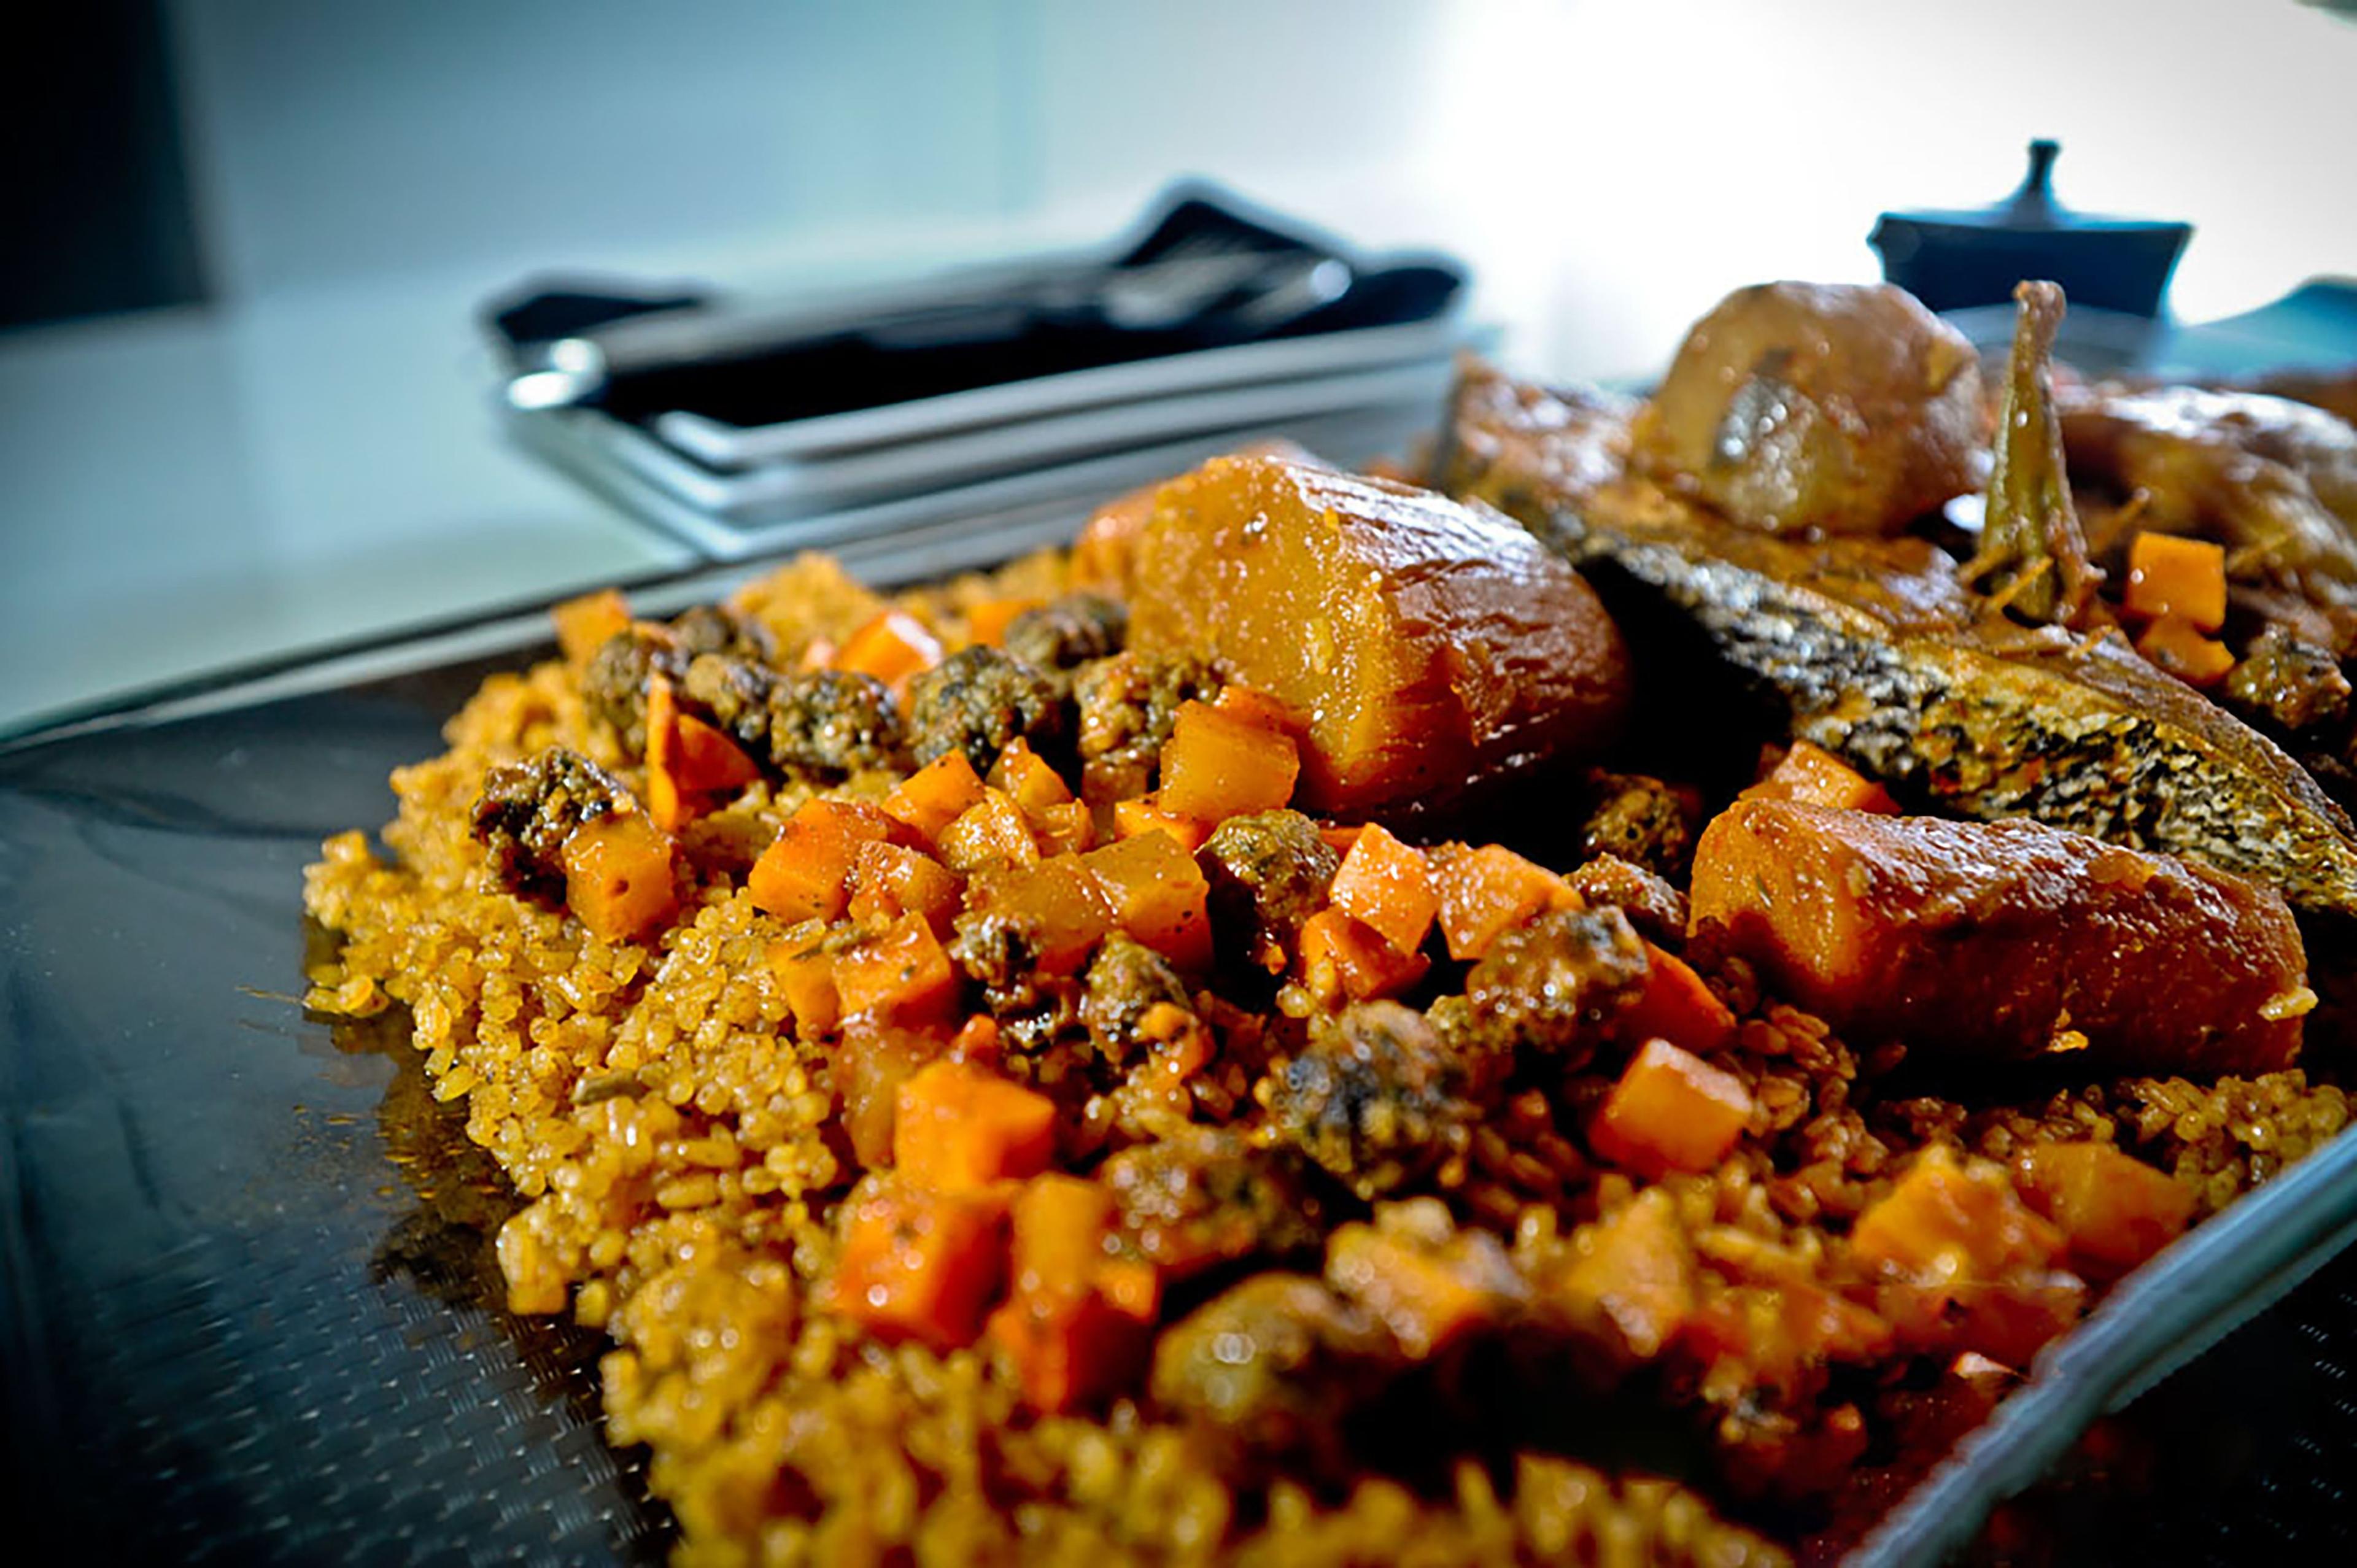 Senegalese tiep bou dien: rice stew vegetables and fishimage